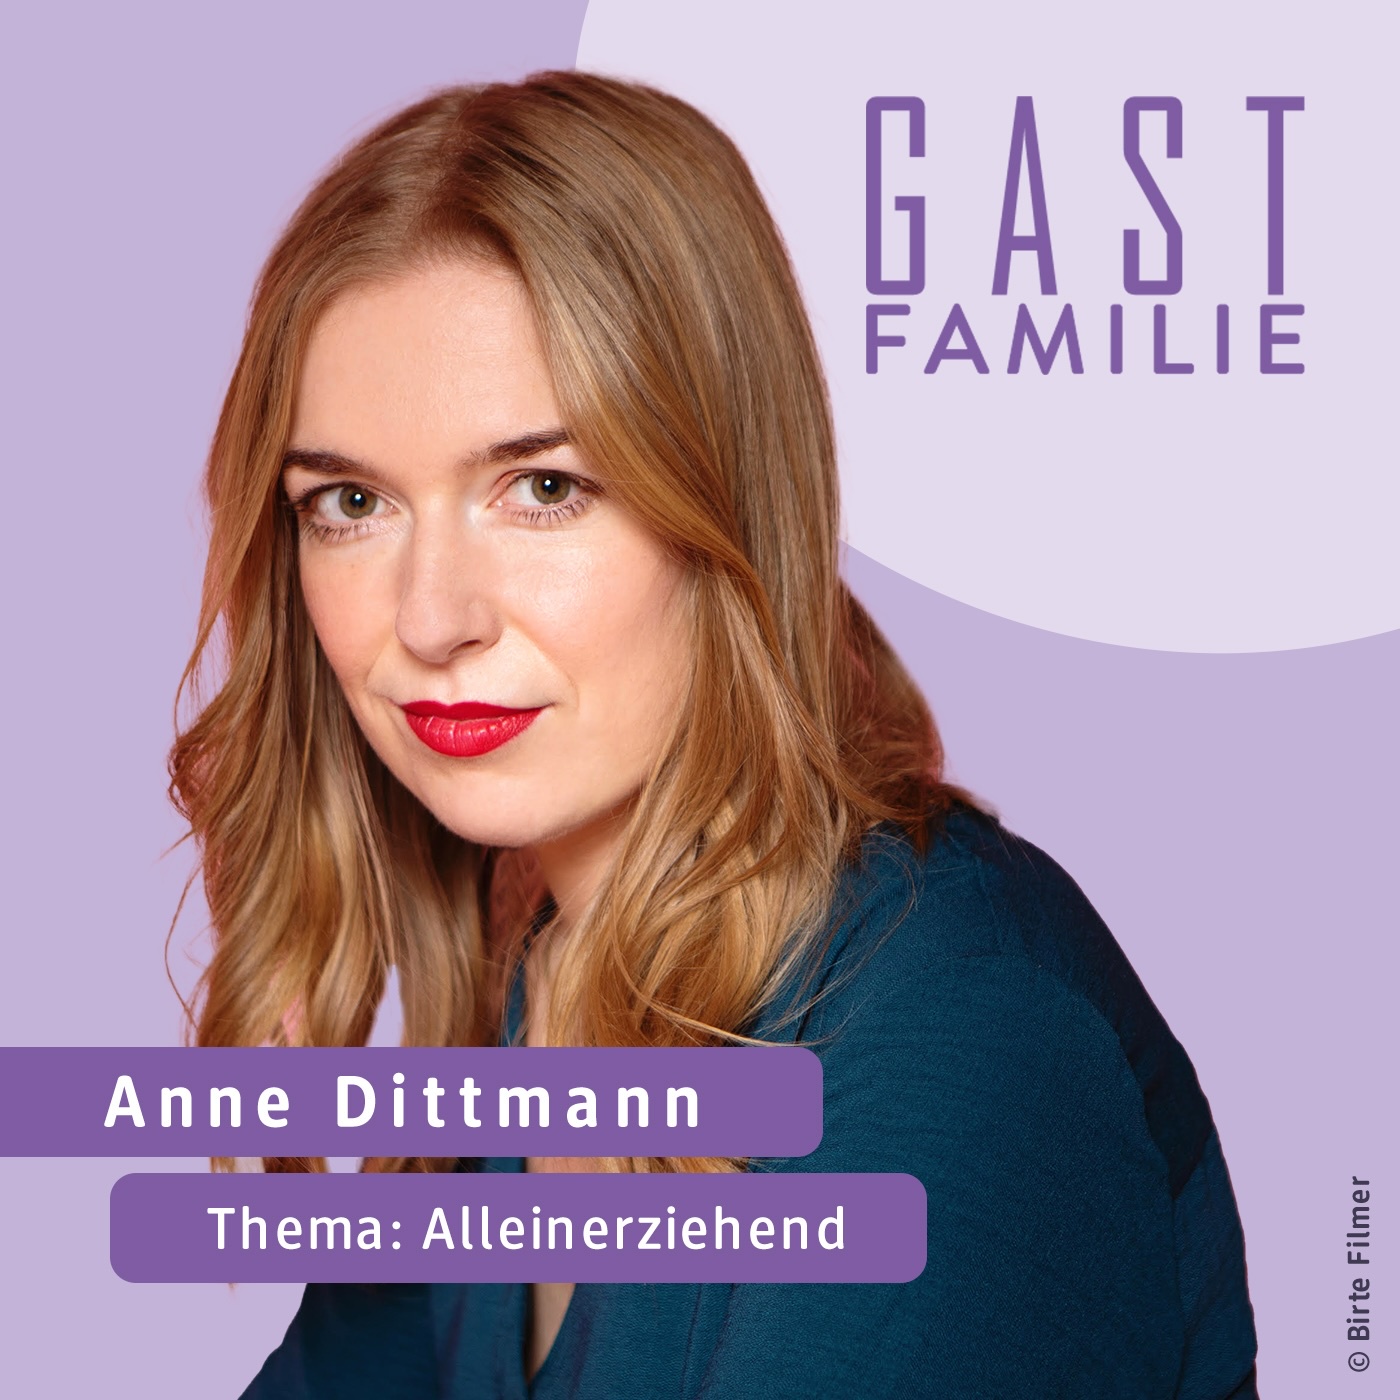 Wie ist es, ein Kind alleine großzuziehen, Anne Dittmann?